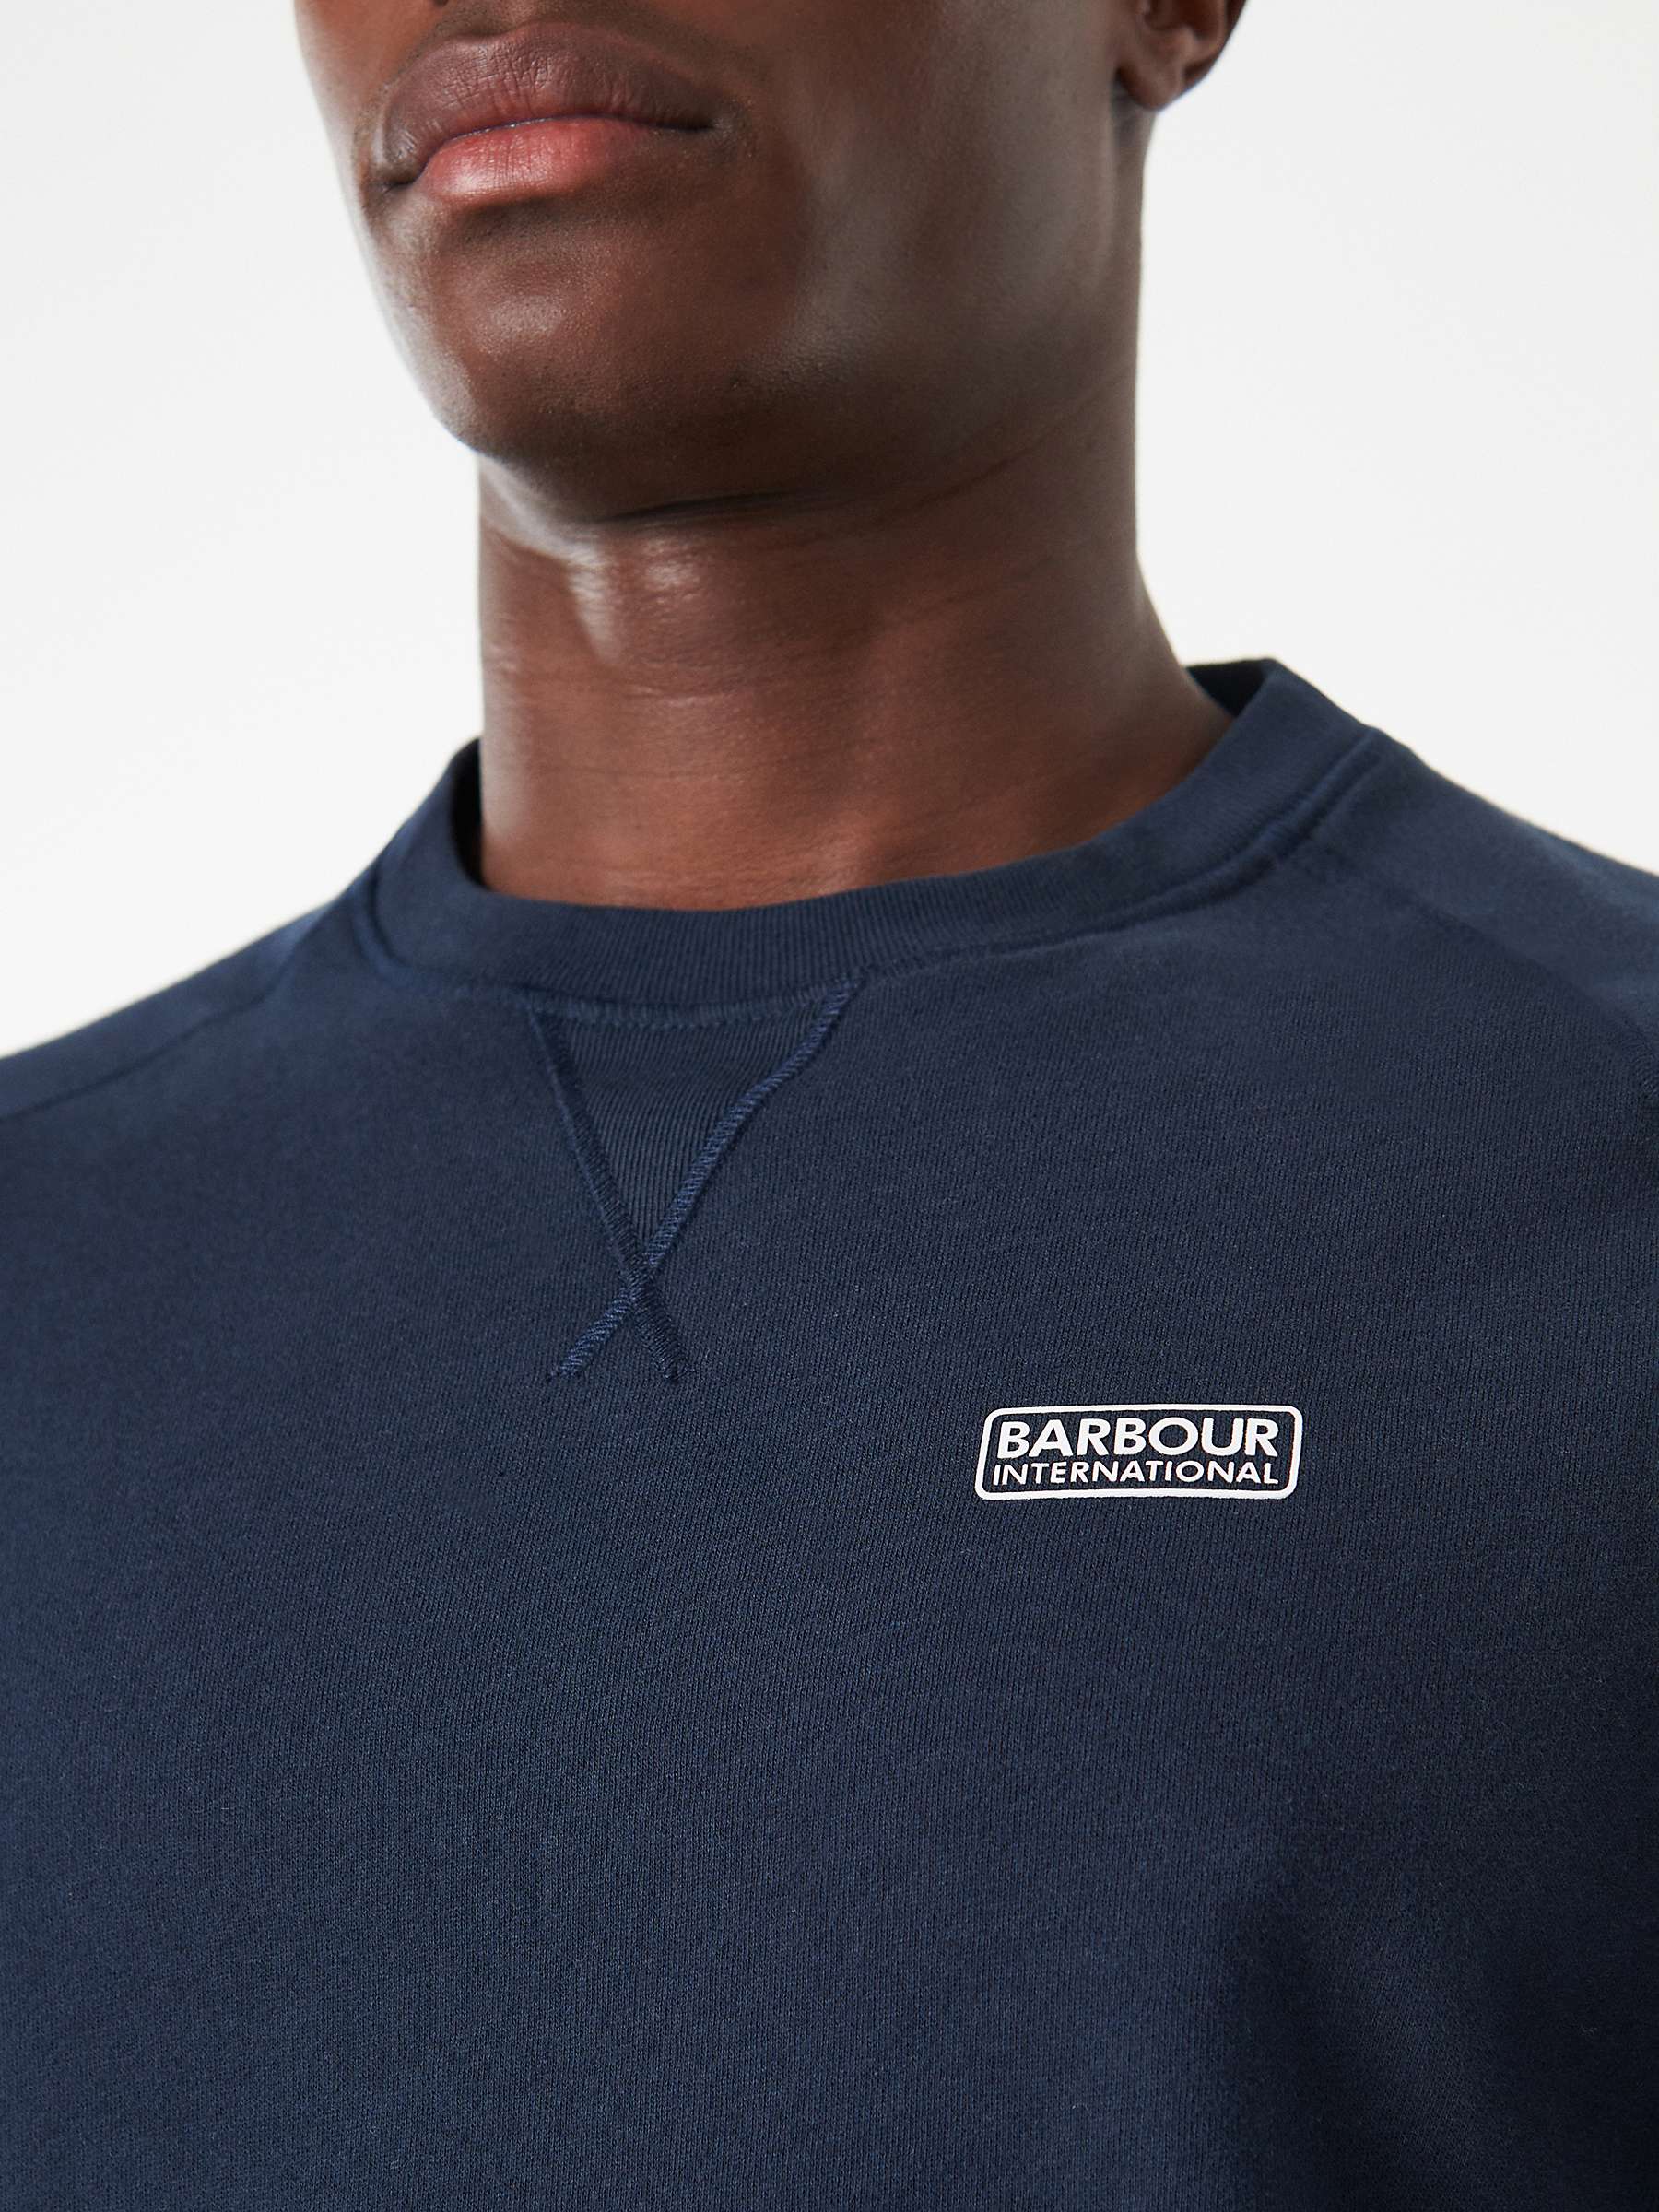 Buy Barbour International Crew Neck Sweatshirt Online at johnlewis.com